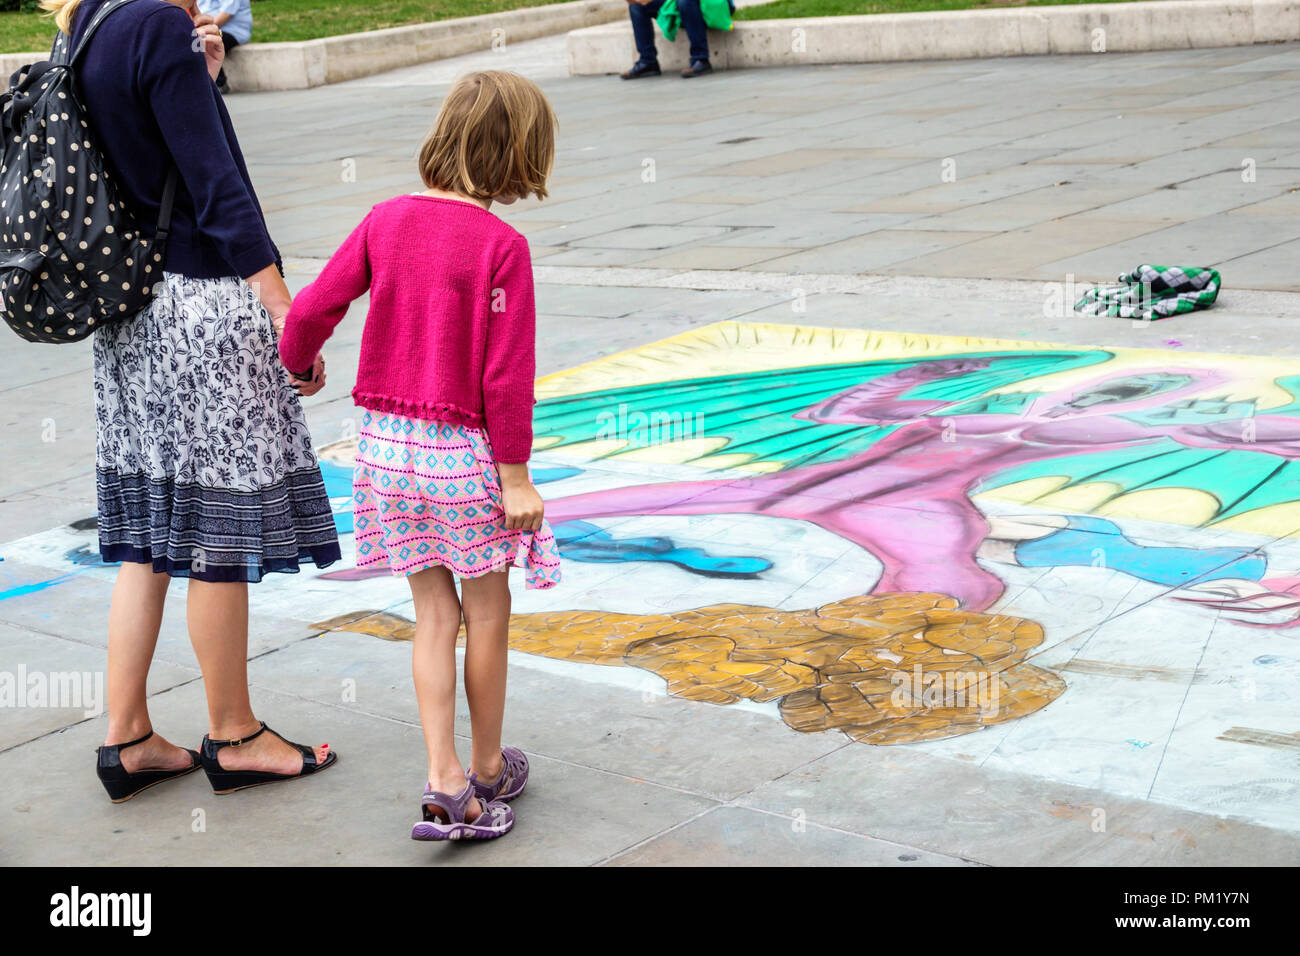 Londra Inghilterra,Regno Unito,Trafalgar Square,National Gallery,plaza,Street art,murale con pavimentazione in gesso,donna femminile,ragazza ragazze,bambini bambini bambini ragazzi Foto Stock